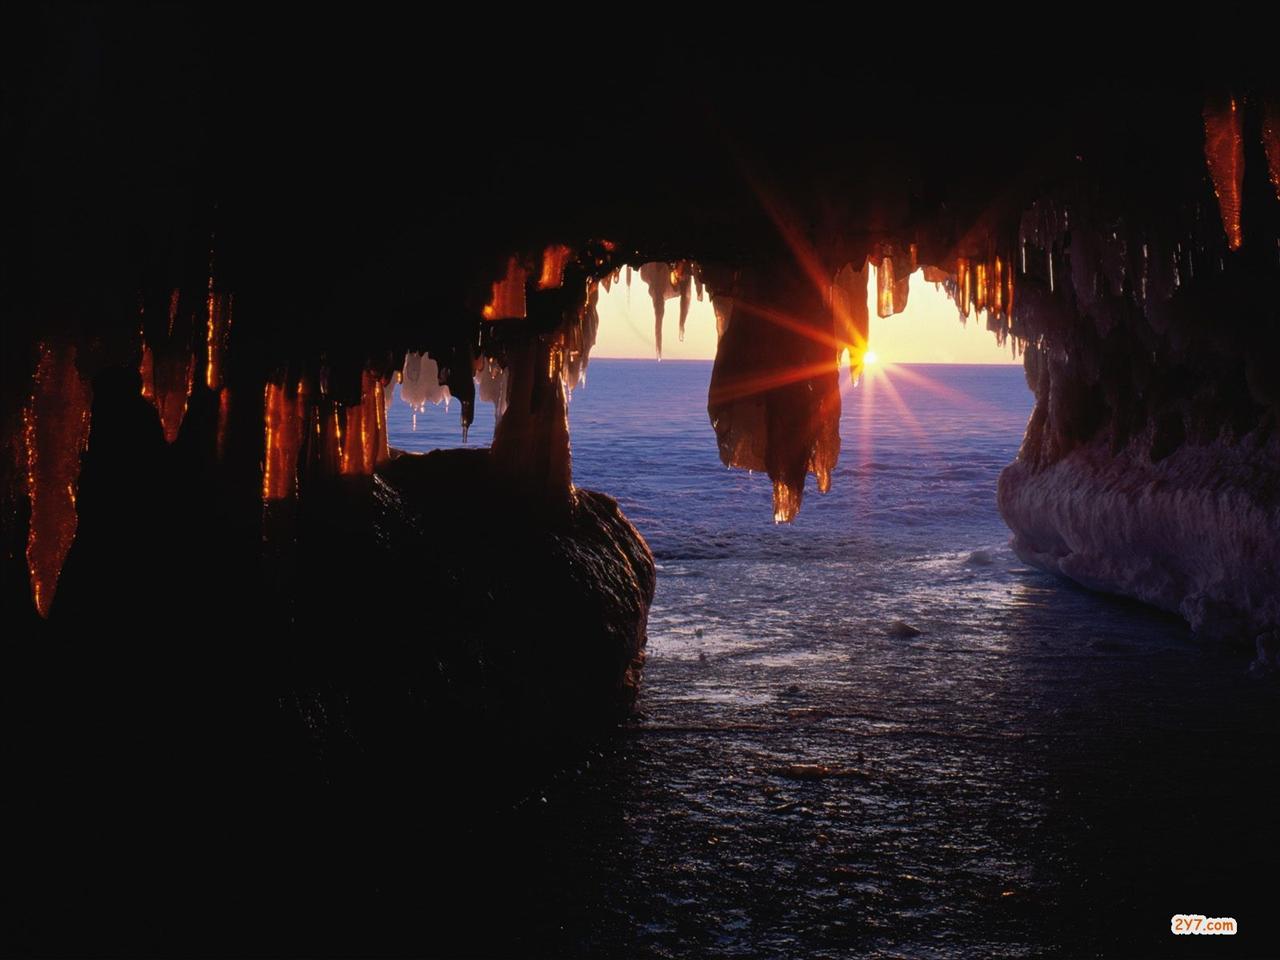 Morskie - Sea Caves, Apostle Islands, Wisconsin - 1600x120.jpg